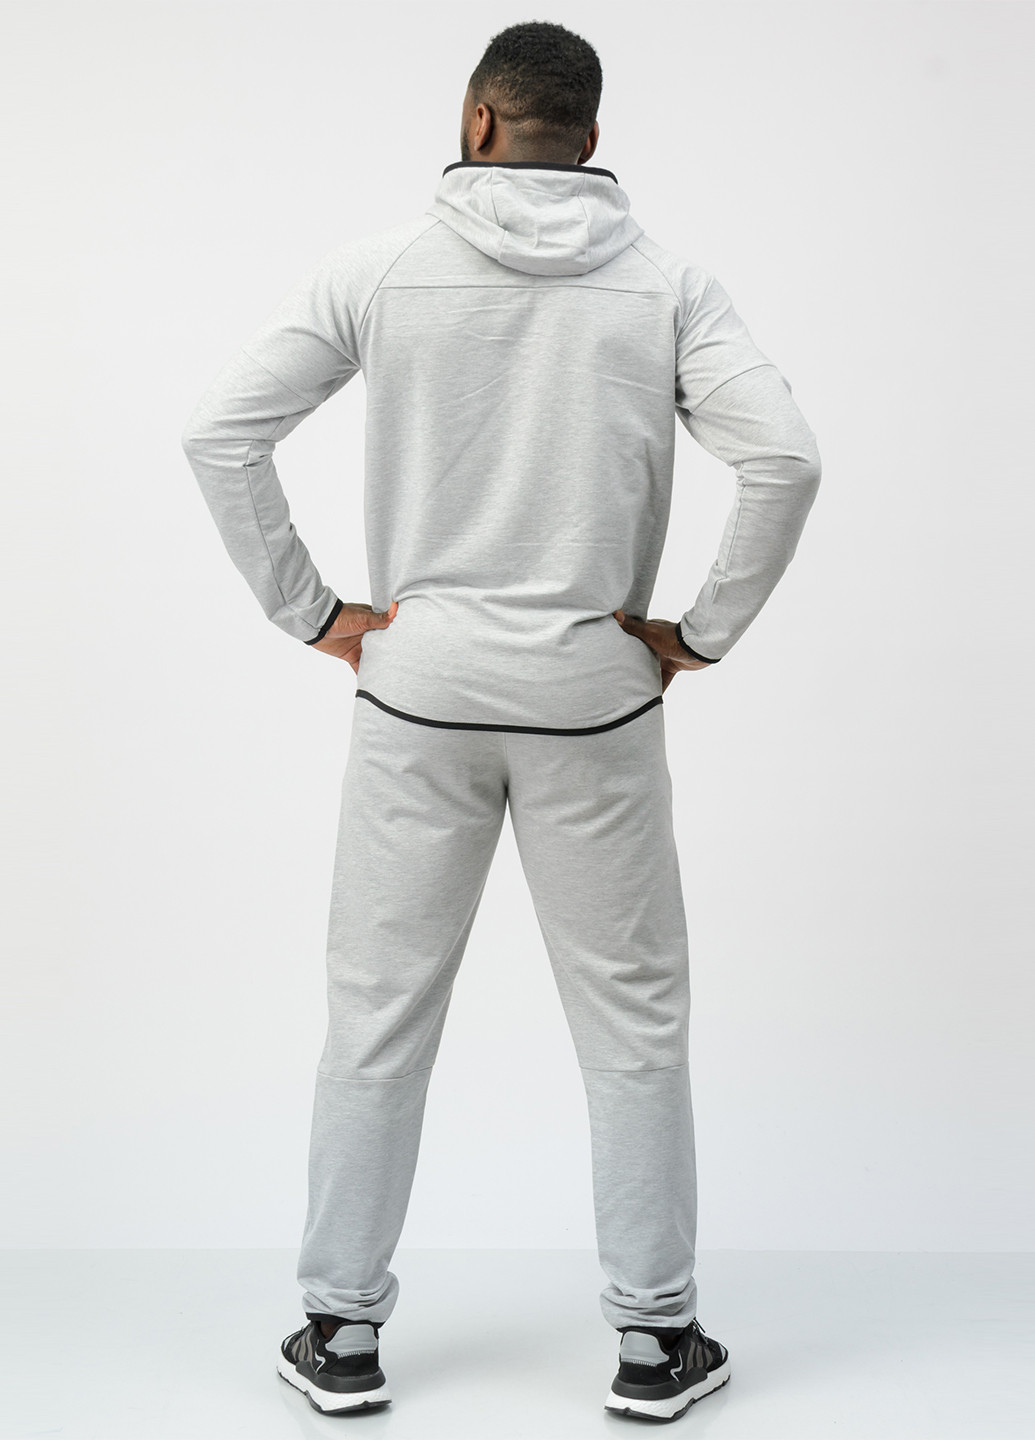 Светло-серый демисезонный костюм (толстовка, брюки) брючный SA-sport